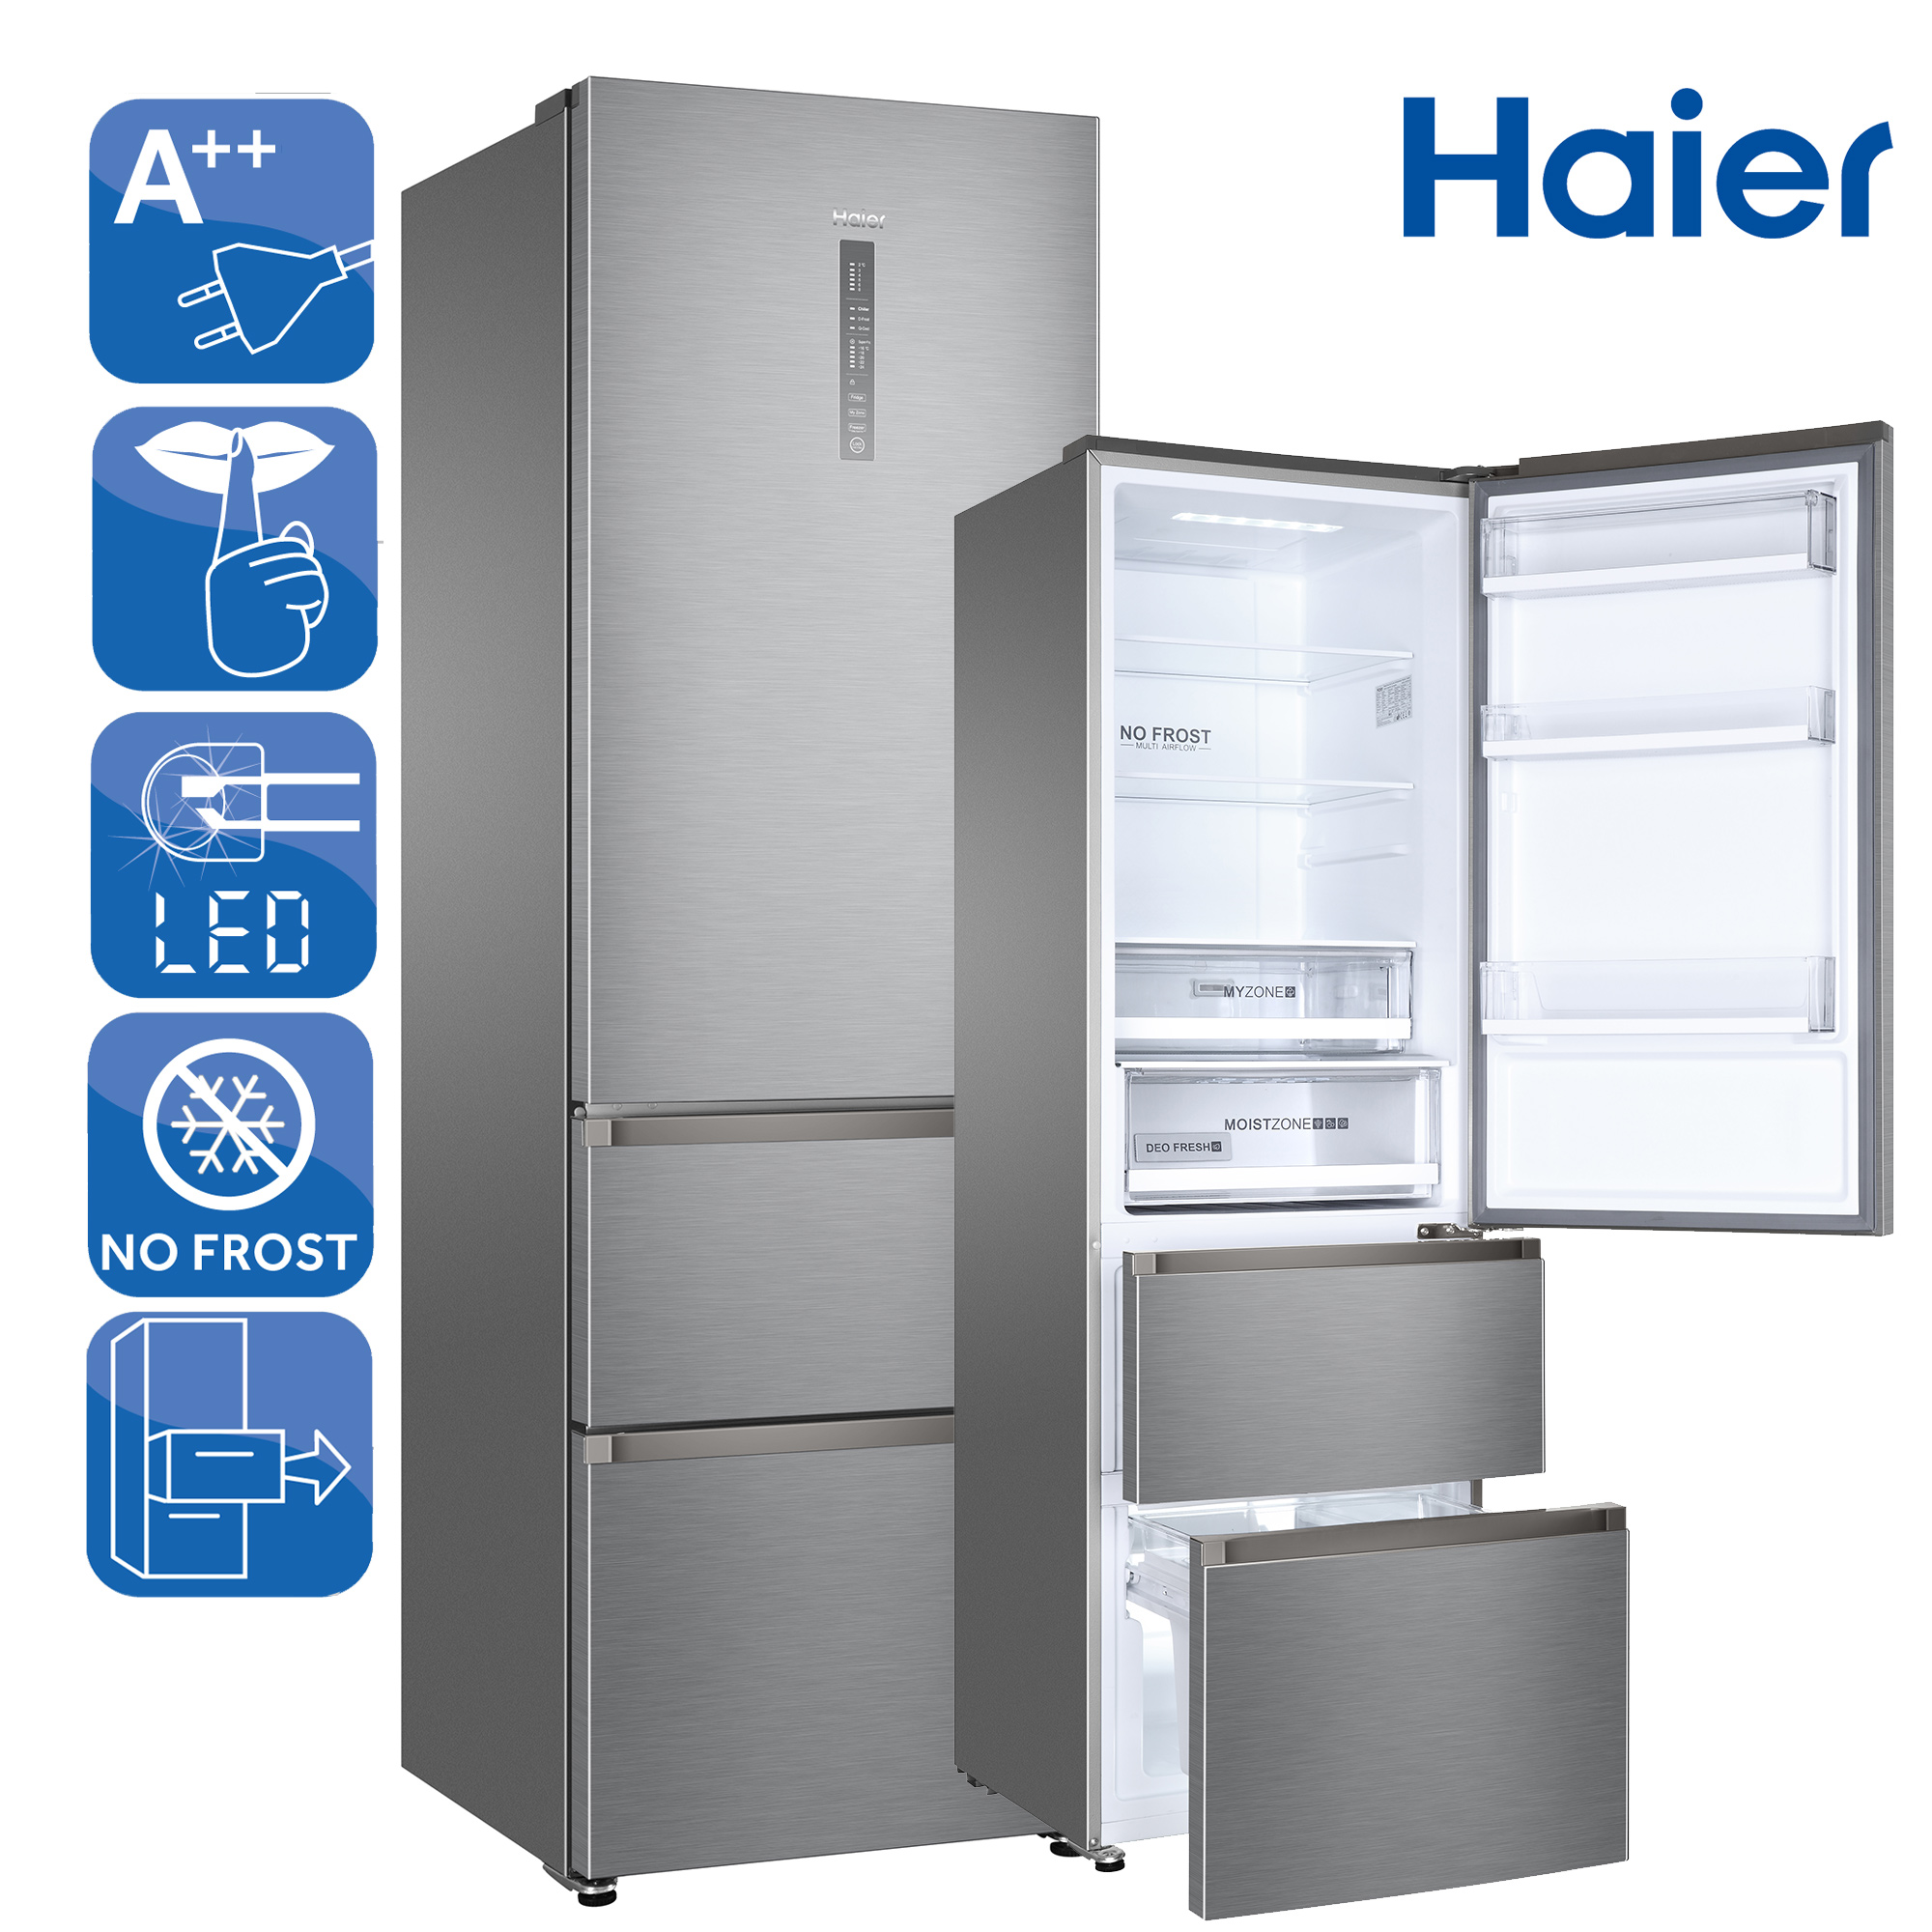 Недорогой холодильник no frost. Холодильник Haier no Frost. Холодильник Хаер ноу Фрост двухкамерный. Хаер total no Frost холодильники. Холодильник Хайер 190 см ноу Фрост двухкамерный.